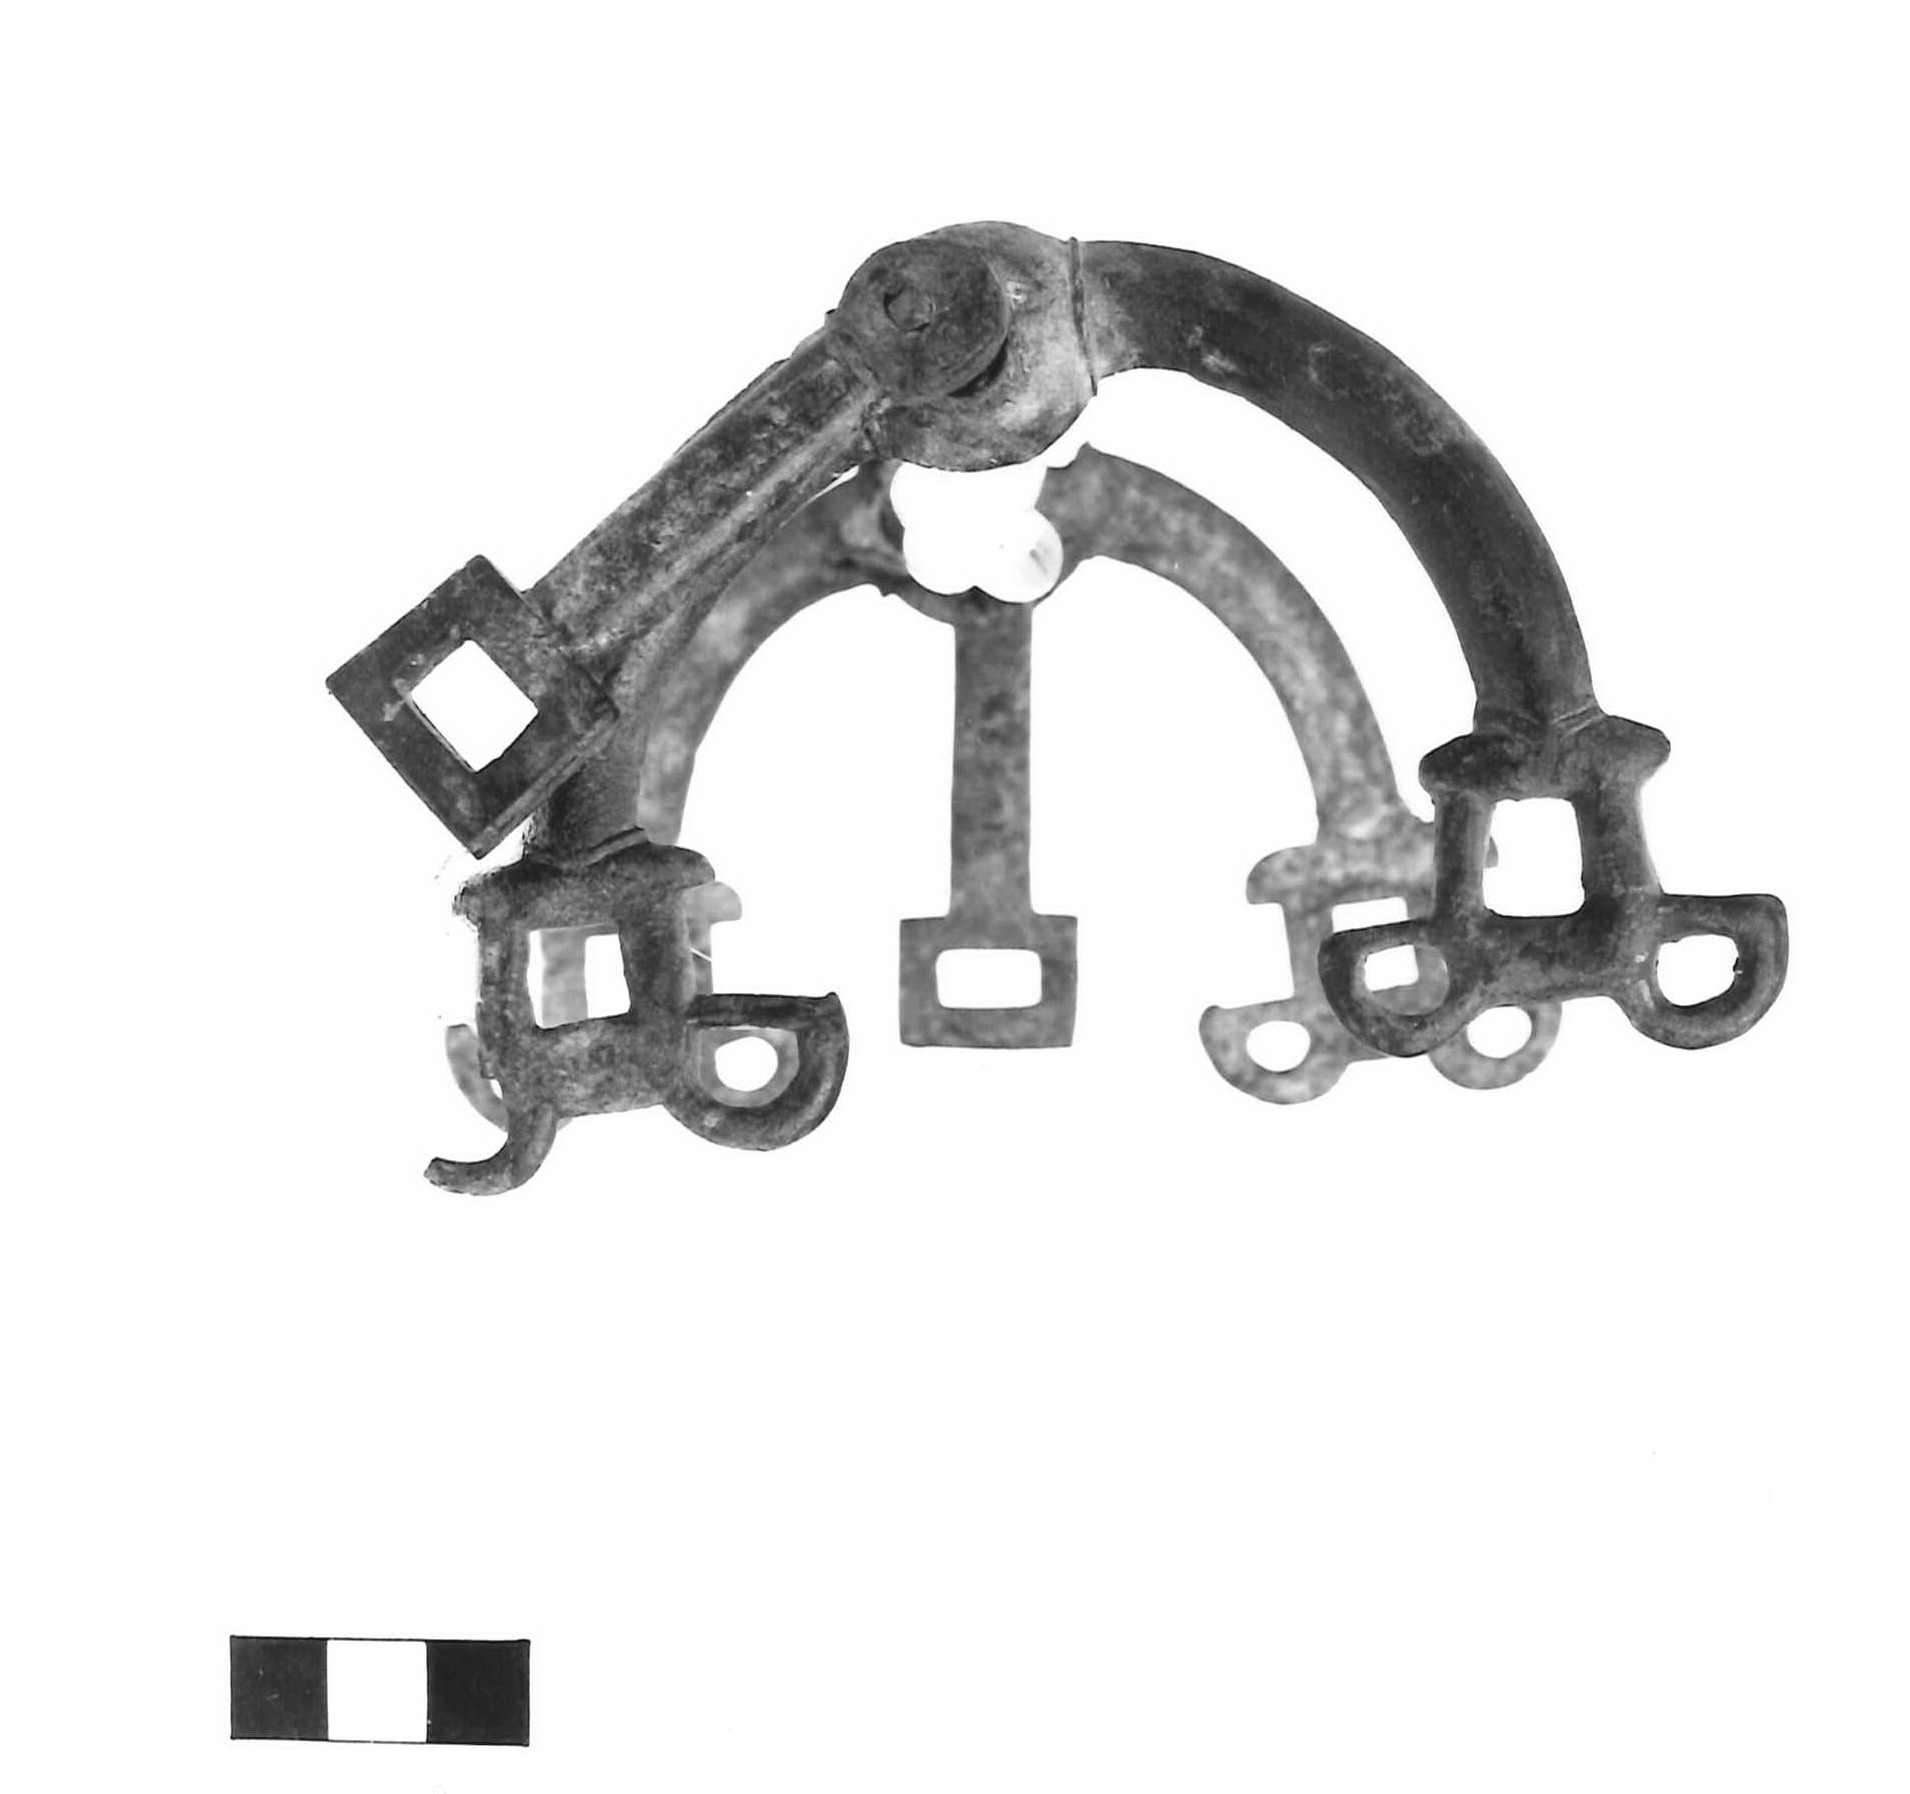 morso equino, tipo Bologna (Von Hase) - fase Piceno IV A (sec. VI a.C)